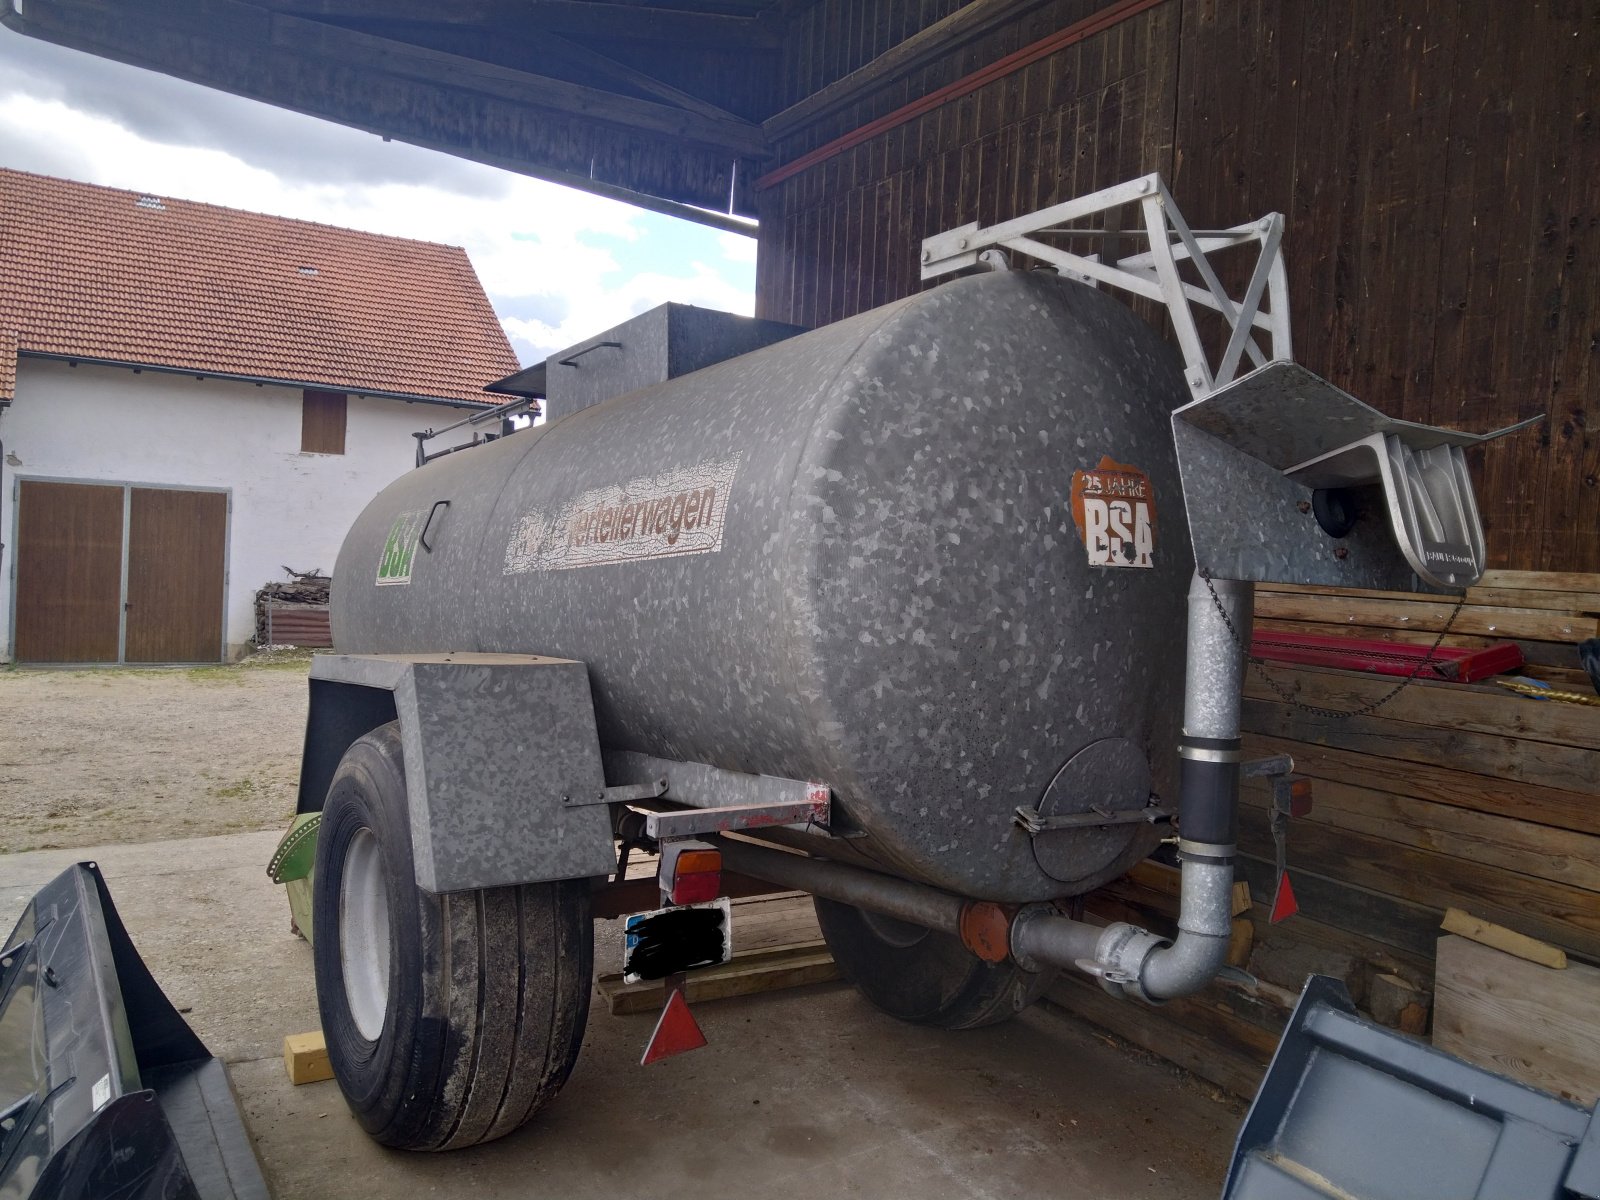 Gülleverteiltechnik des Typs BSA Güllefass, Schleuderfass, Gebrauchtmaschine in Anzing (Bild 2)